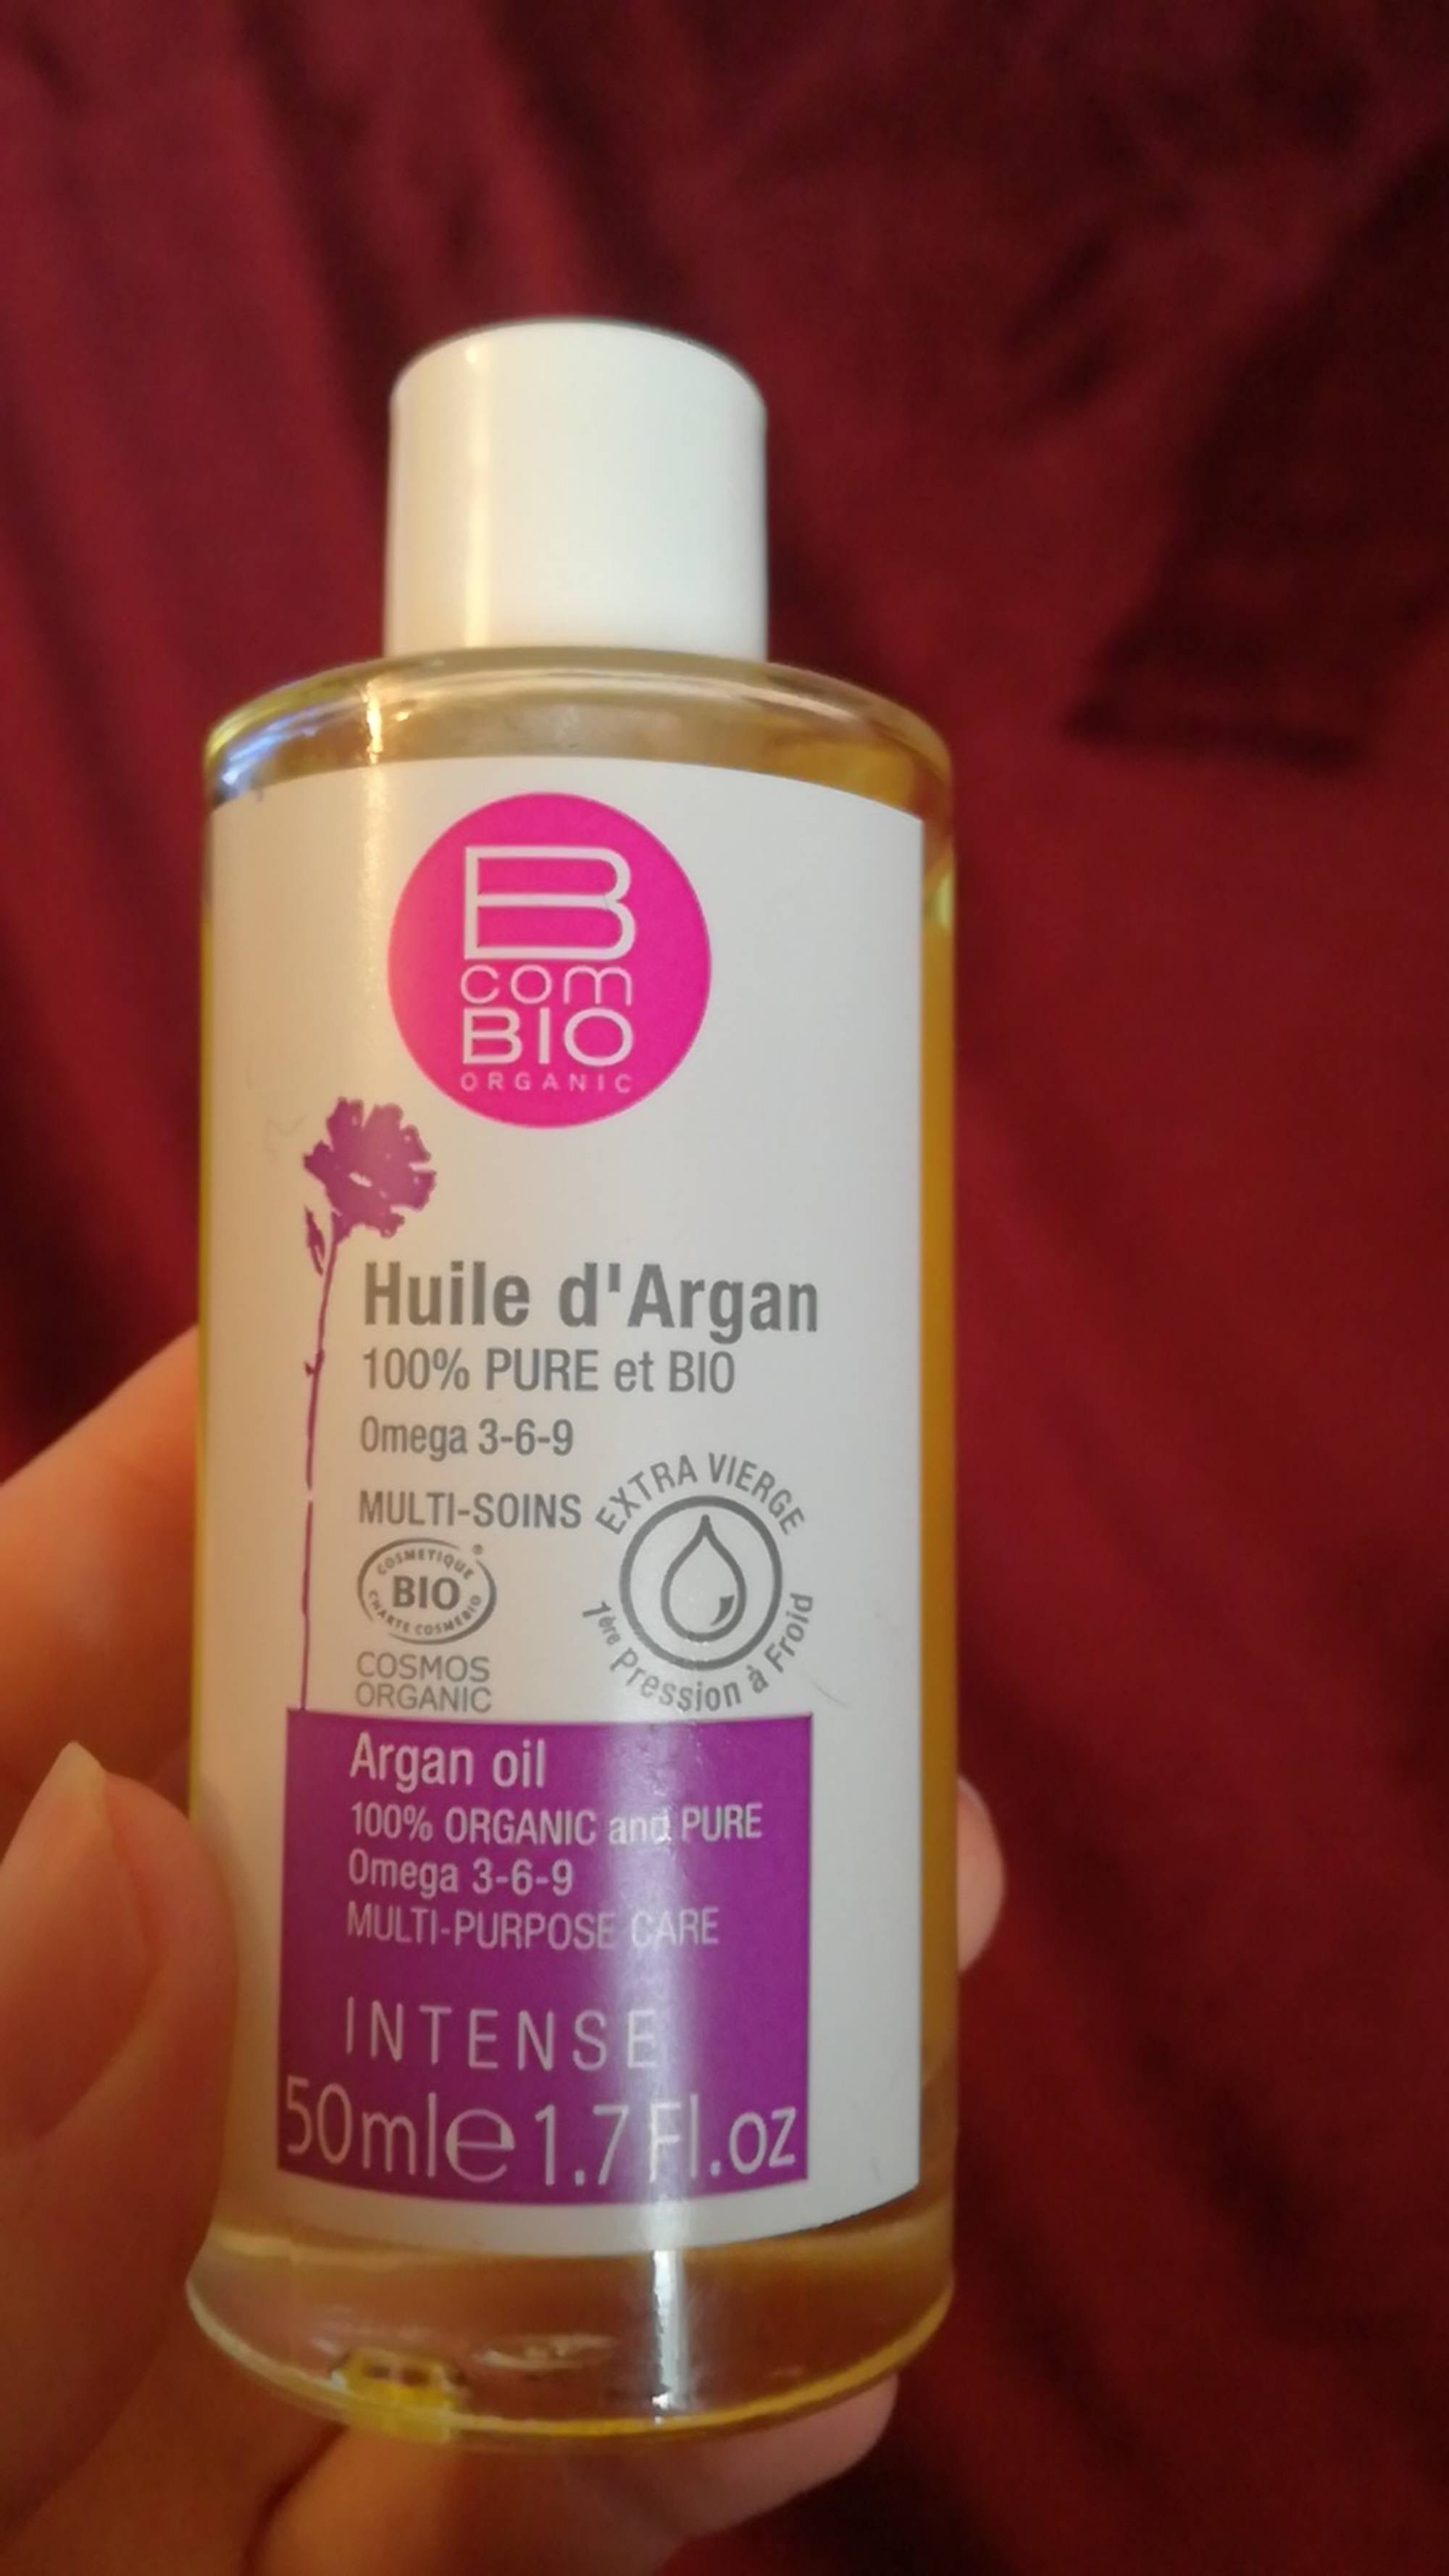 B COM BIO - Huile d'Argan 100% pure et bio - Multi-soins 